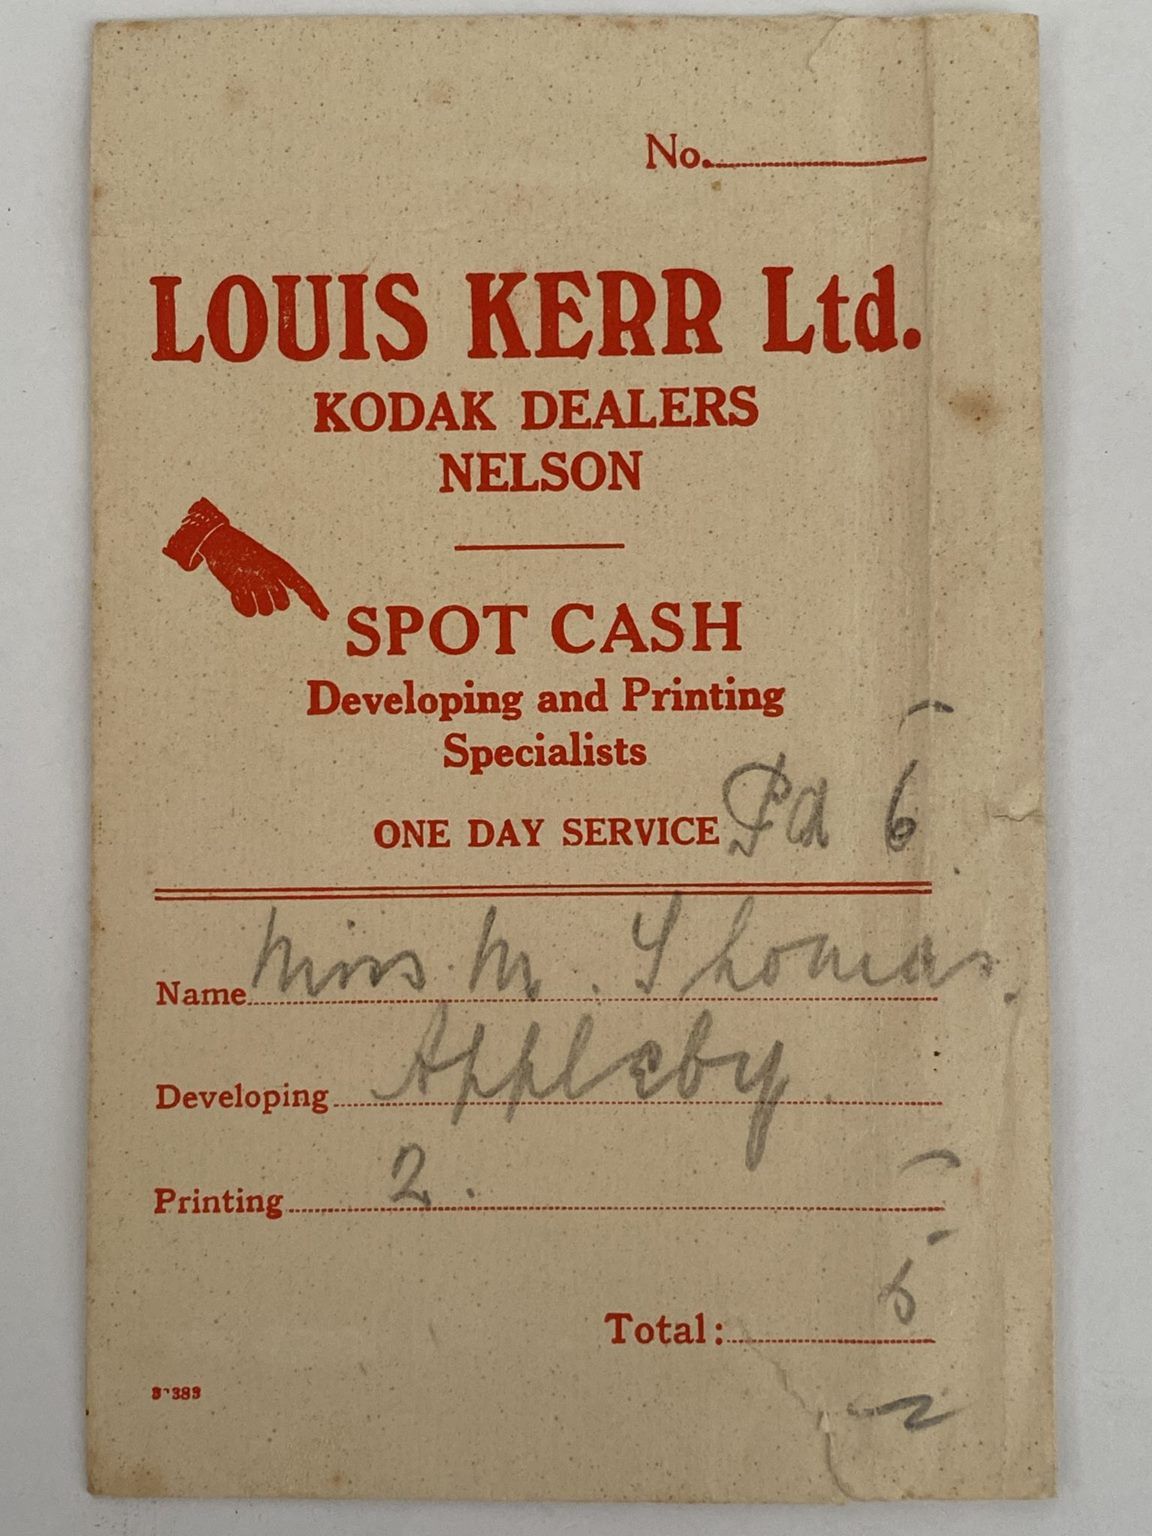 OLD PHOTO / NEGATIVE WALLET: Louis Kerr Ltd. Kodak Dealers 1920s / 1930s